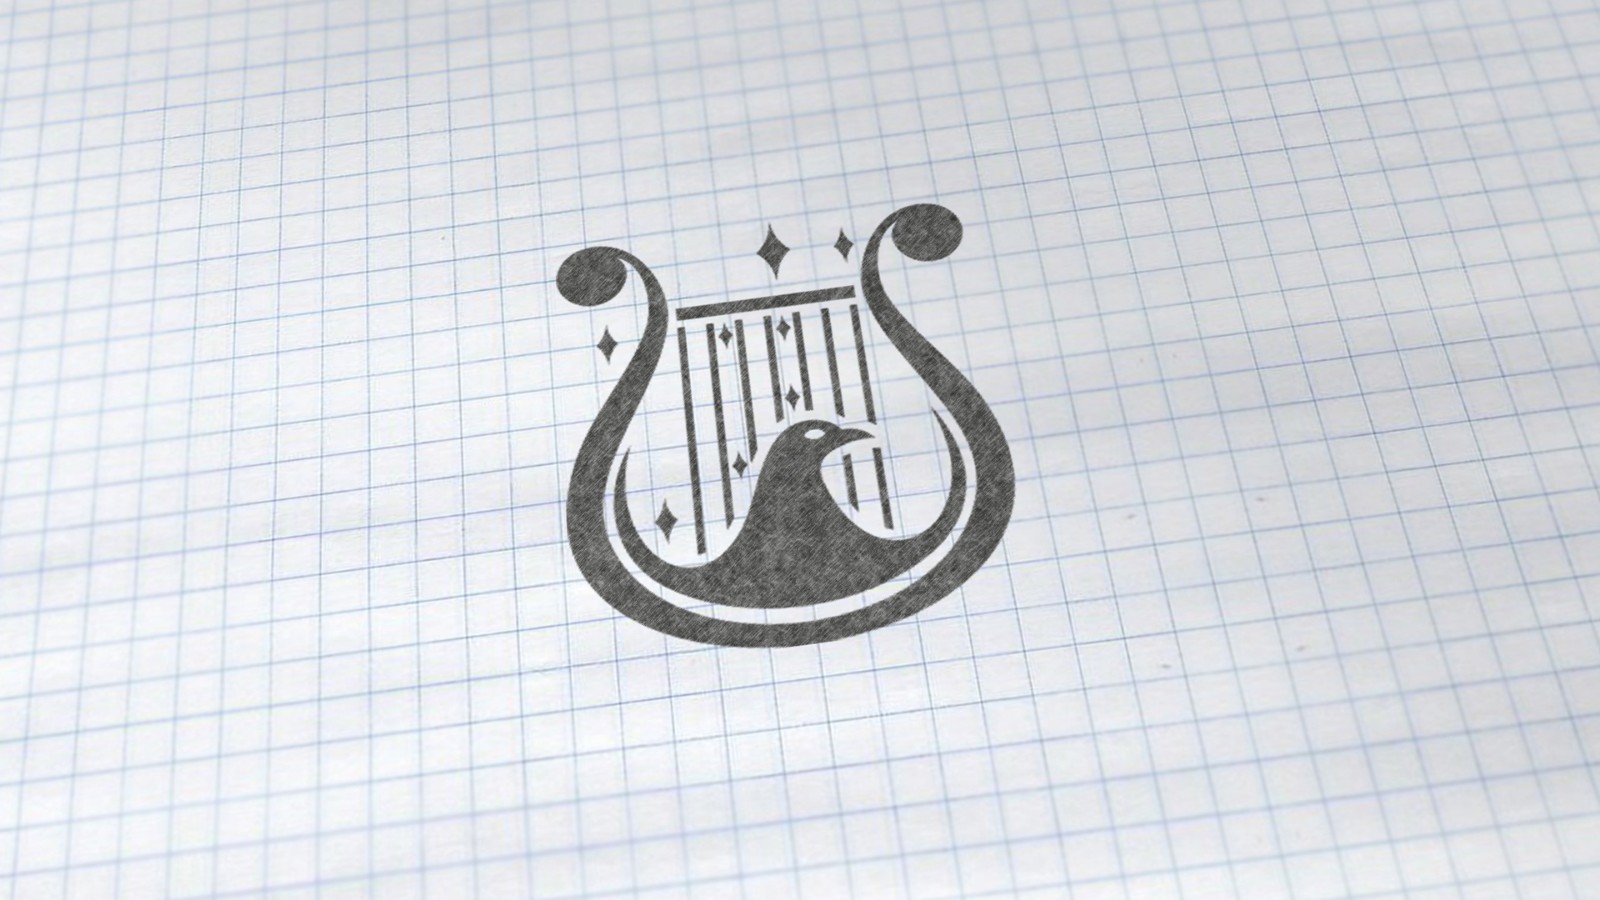 澳琴庄红酒logo设计,广告语设计,古一设计